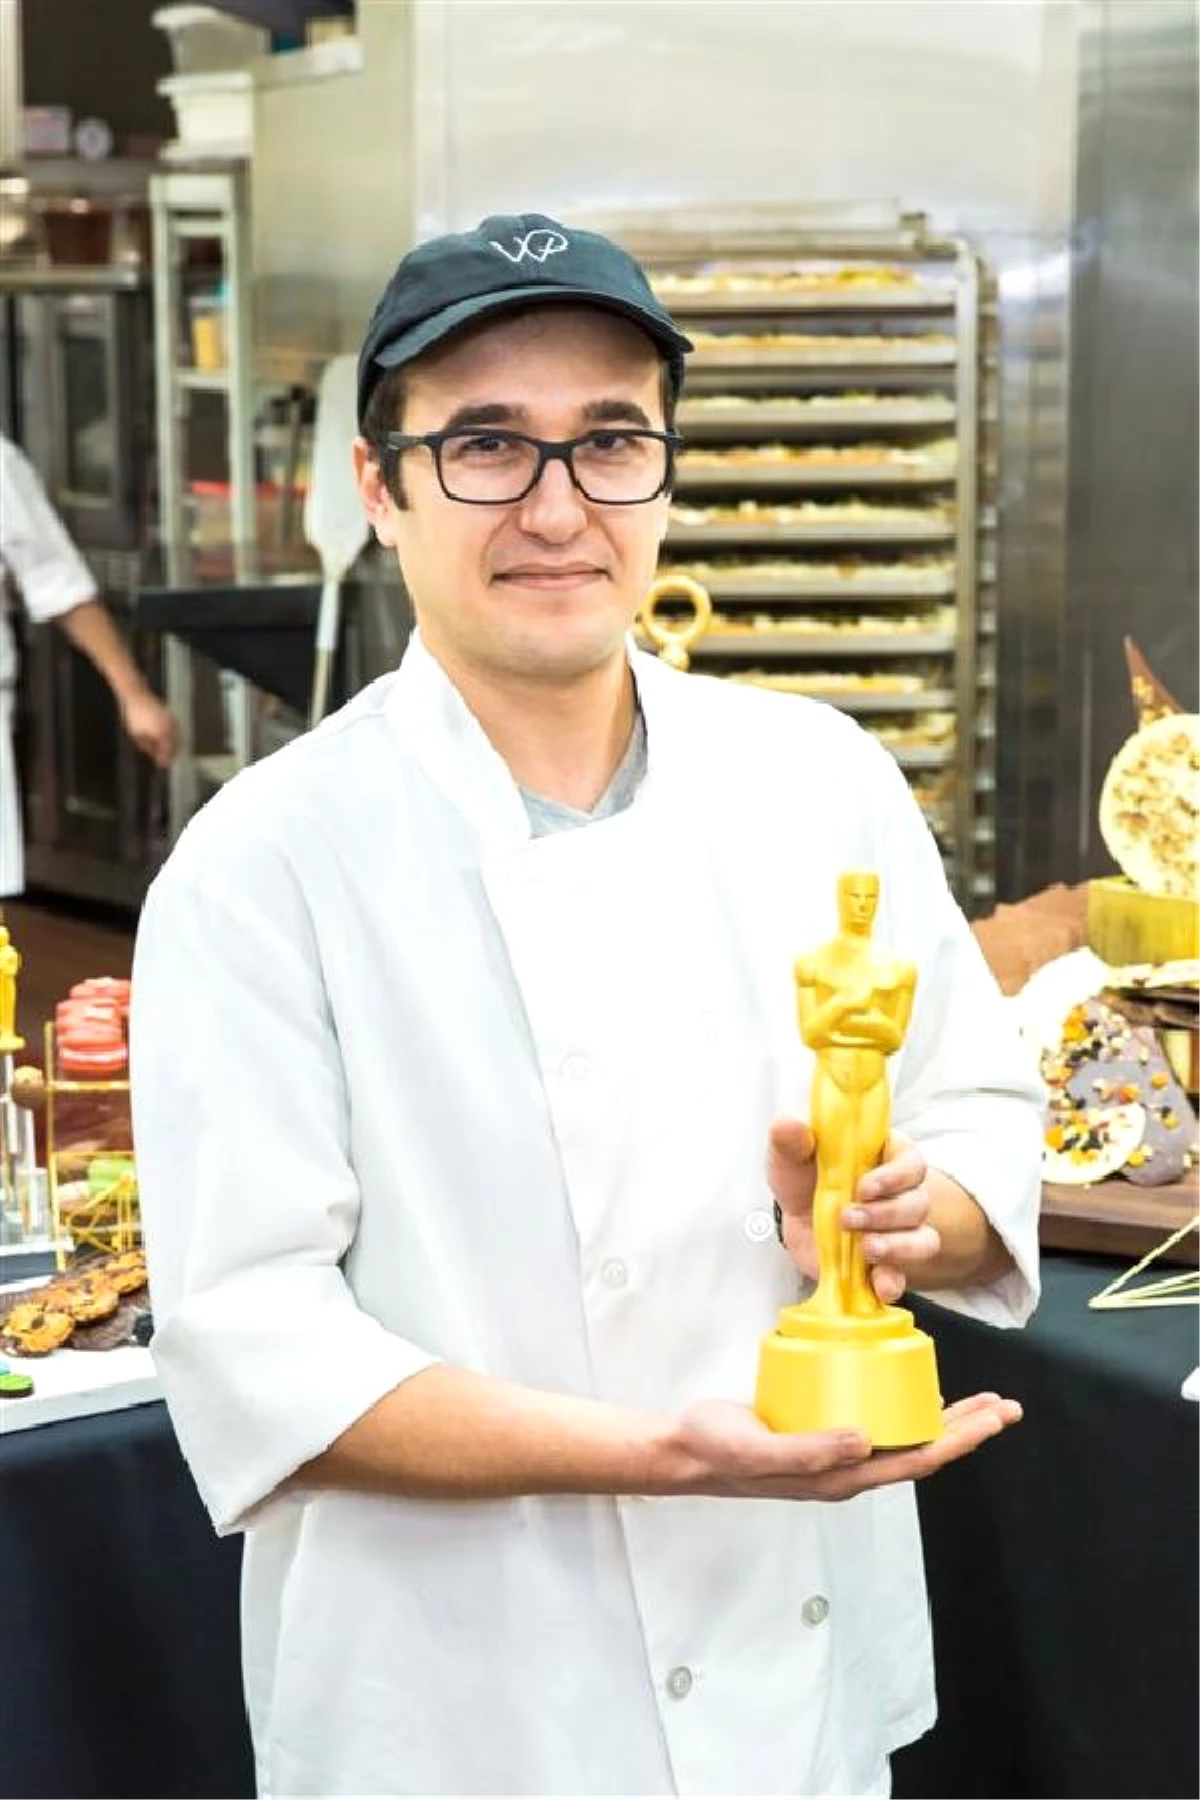 Oscar Mutfağında İlk Kez Bir Türk Aşçı Olacak